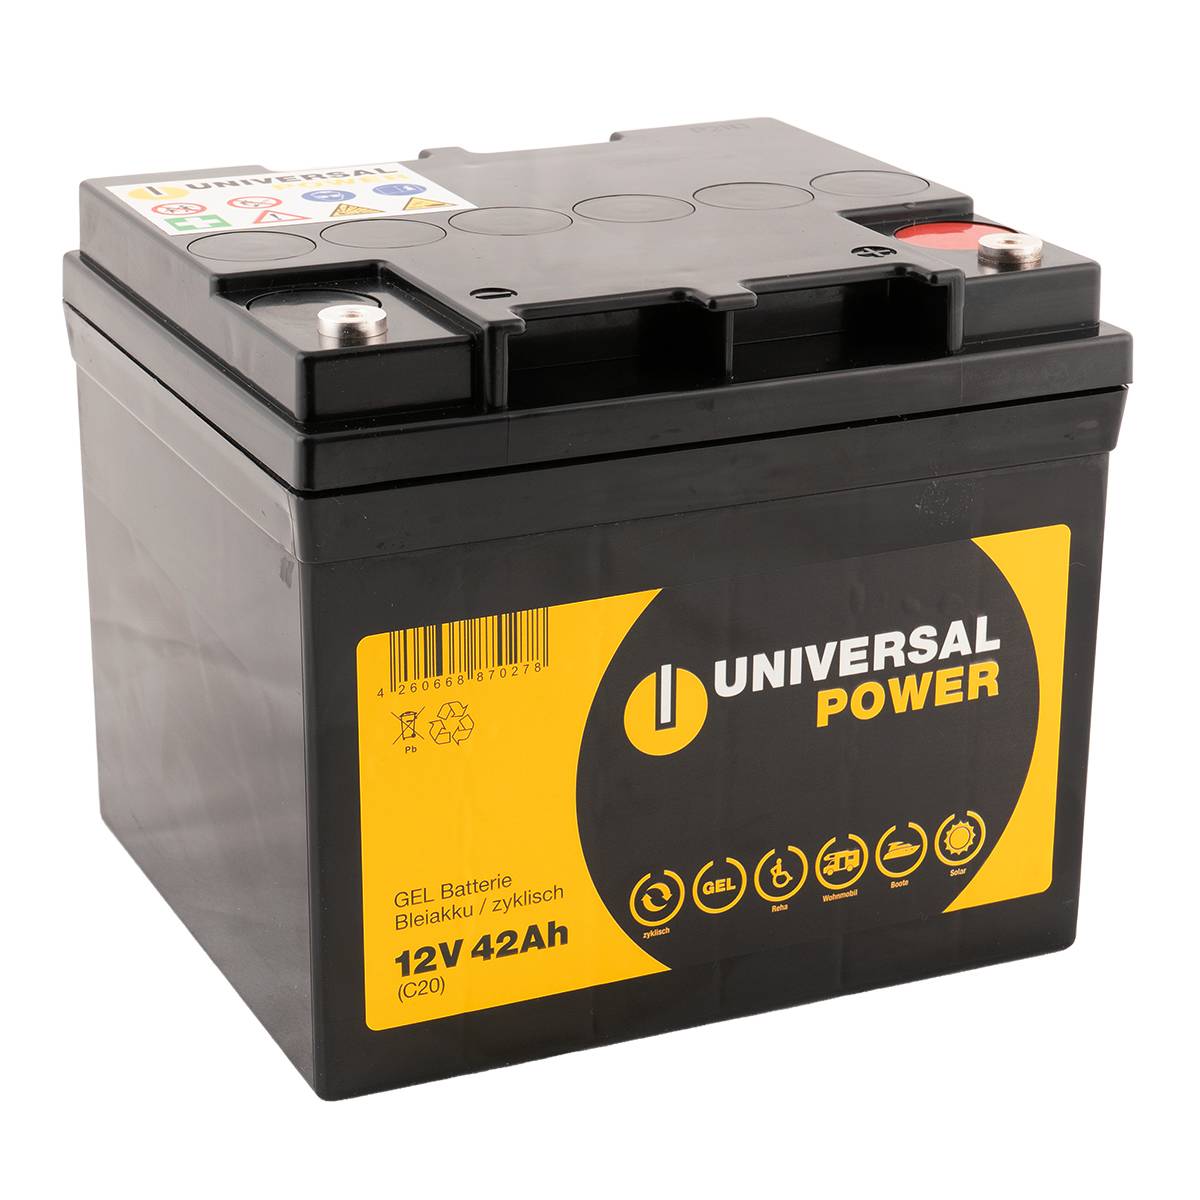 Universal Power UPG12-42 12V 42Ah (C20) Gel Batterie wartungsfrei, zyklisch